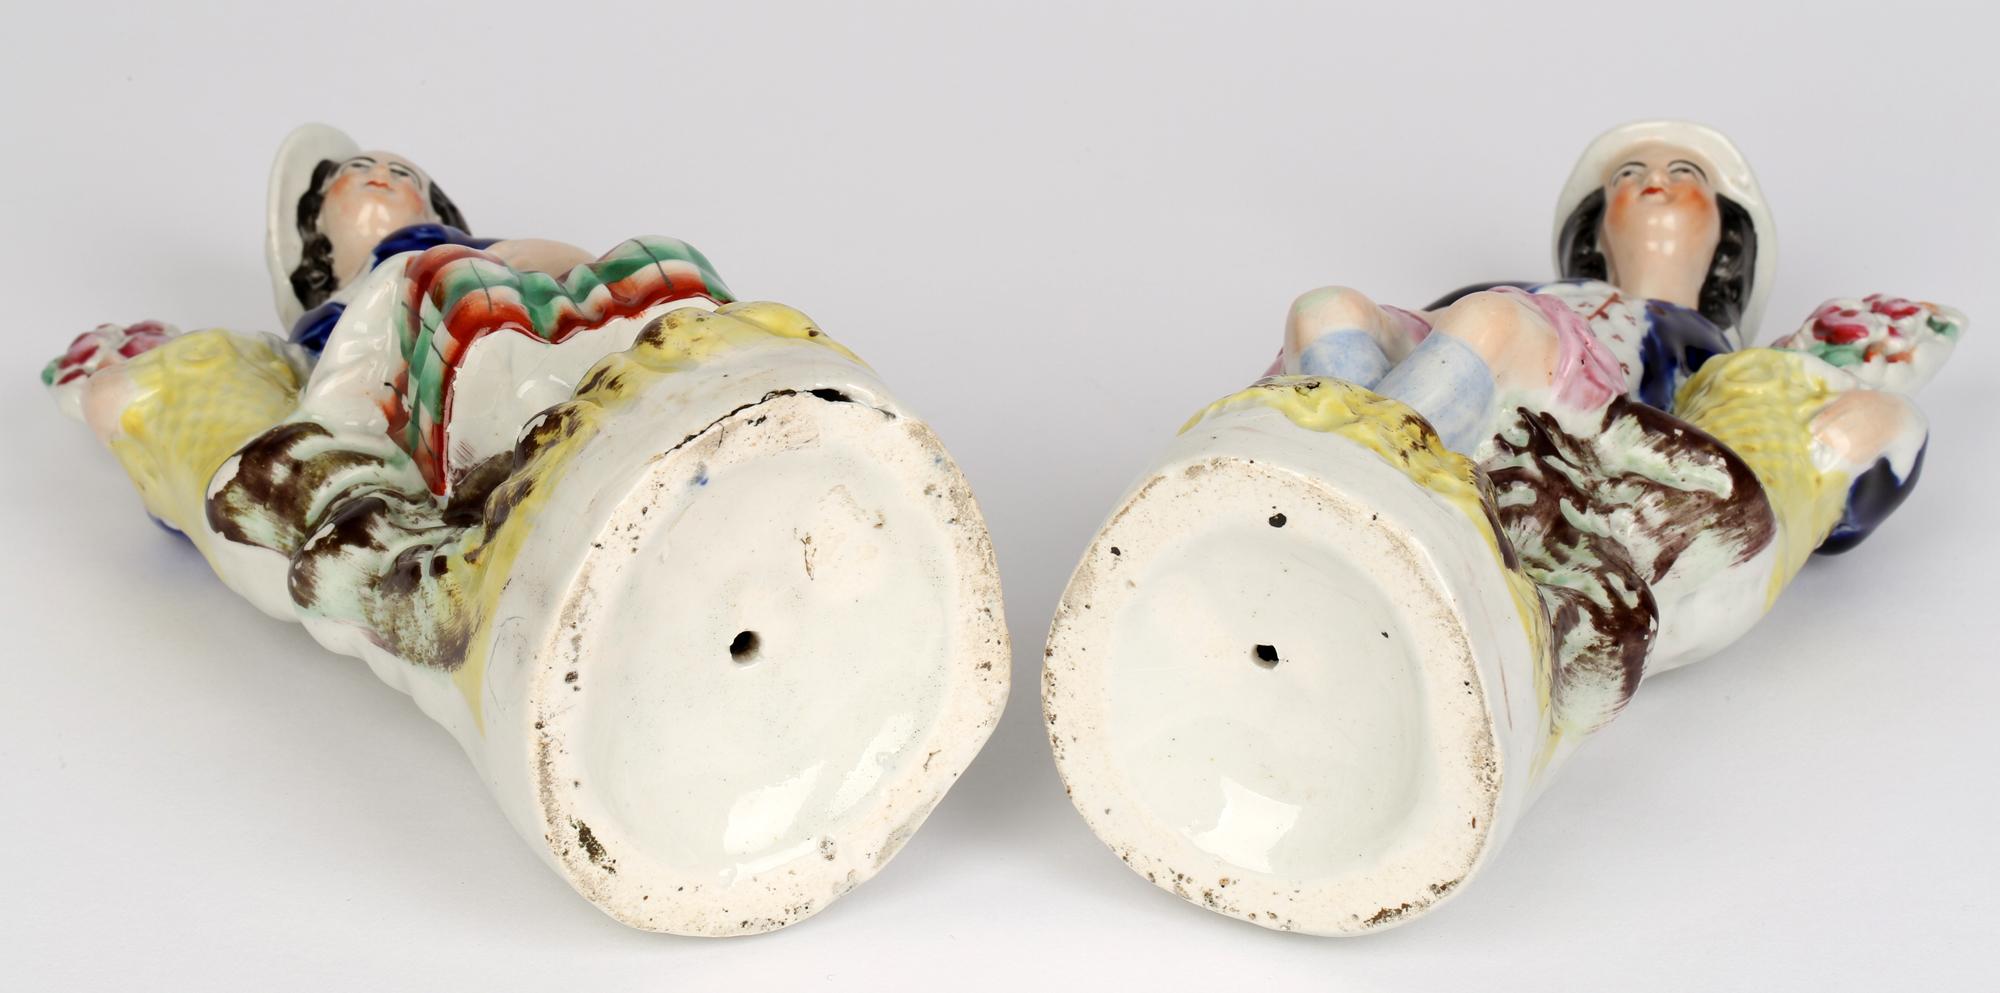 Une bonne paire de figurines en poterie du Staffordshire représentant un homme et une femme assis avec un panier contenant des fleurs, datant d'environ 1850. Les personnages sont assis sur un piédestal rocheux reposant sur une base arrondie moulée